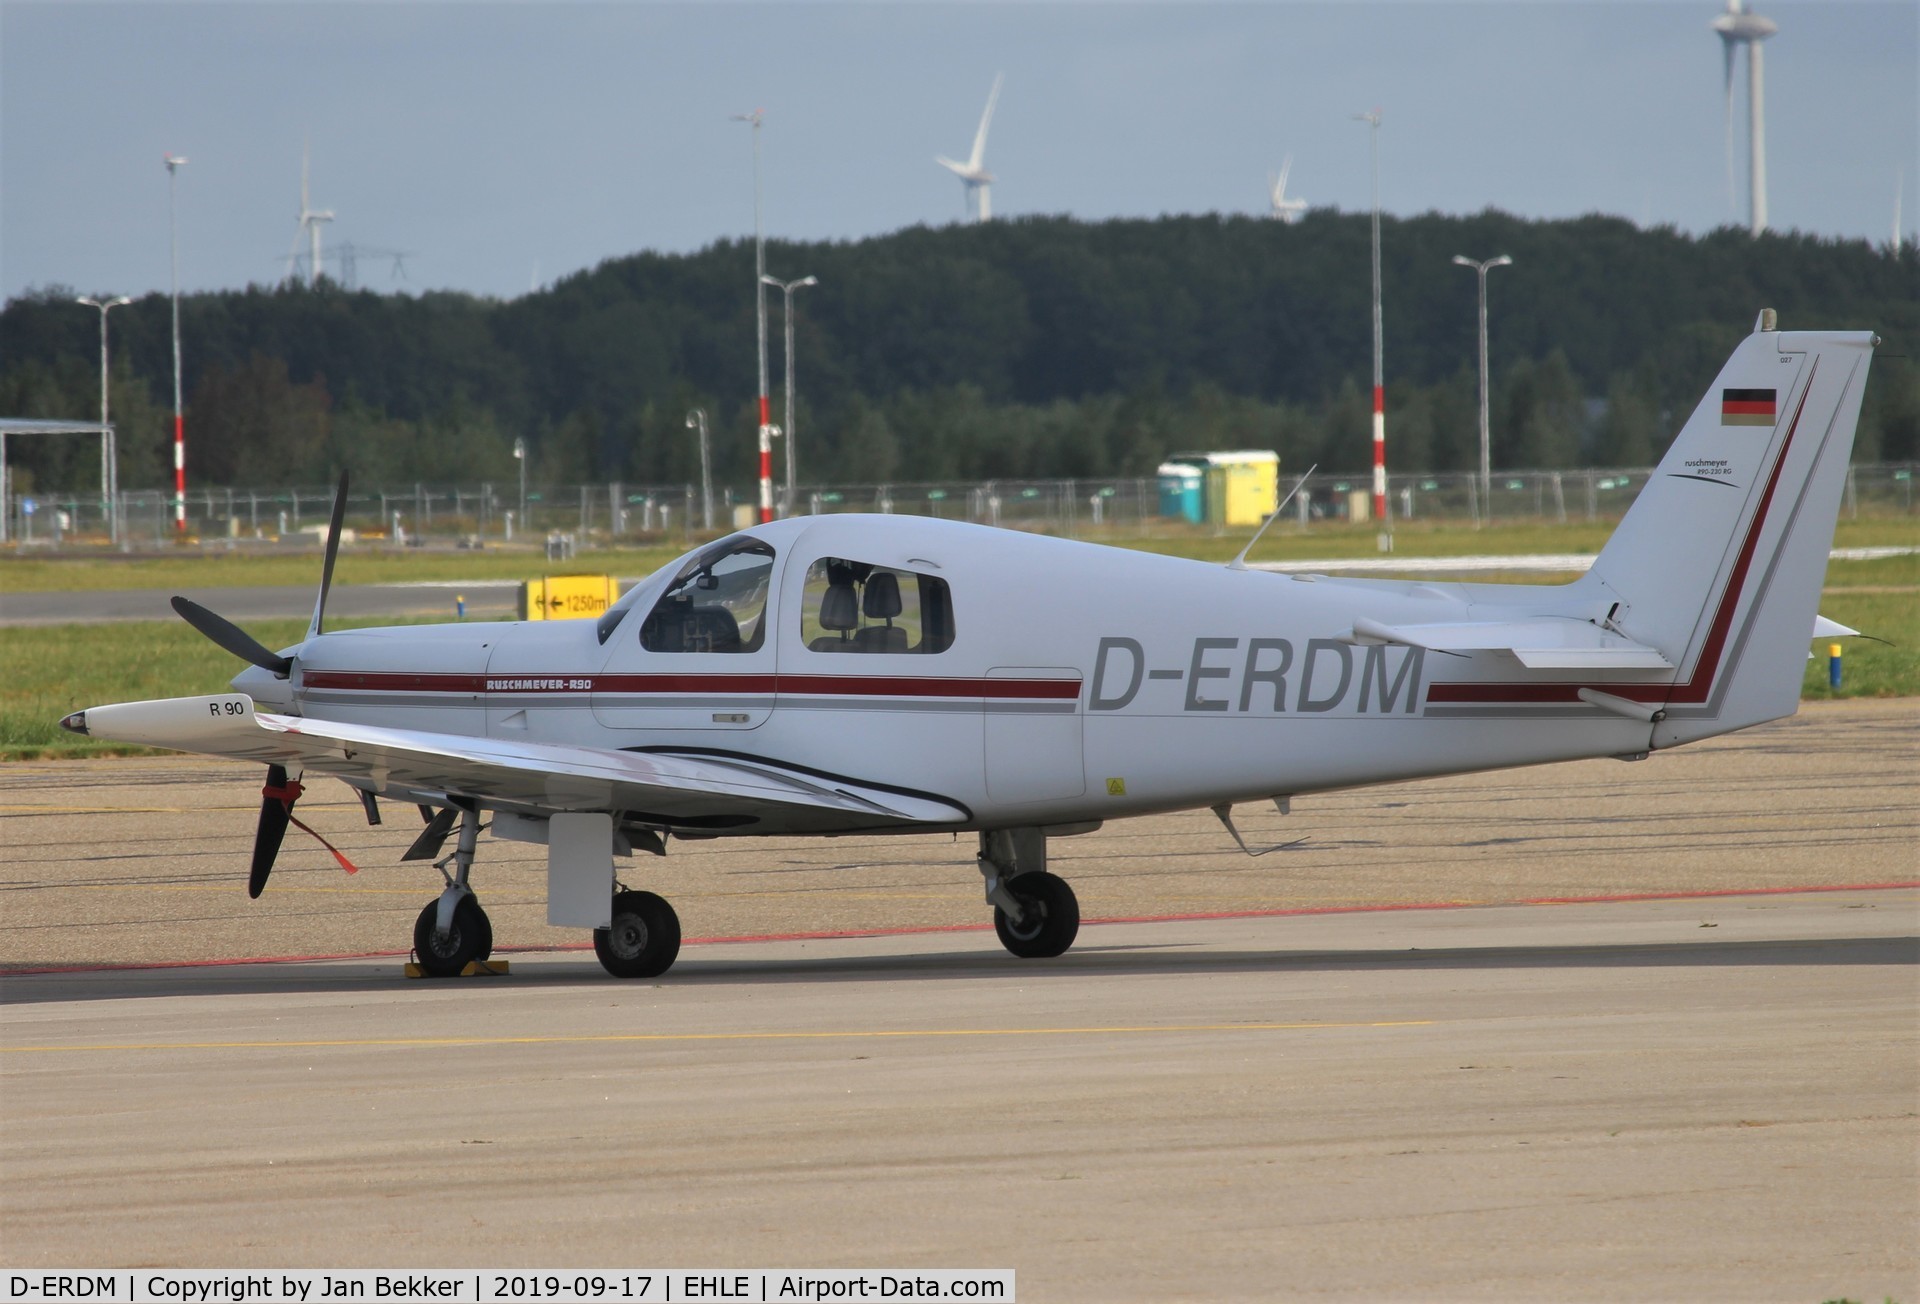 D-ERDM, 1995 Ruschmeyer R90-230RG C/N 027, Lelystad Airport